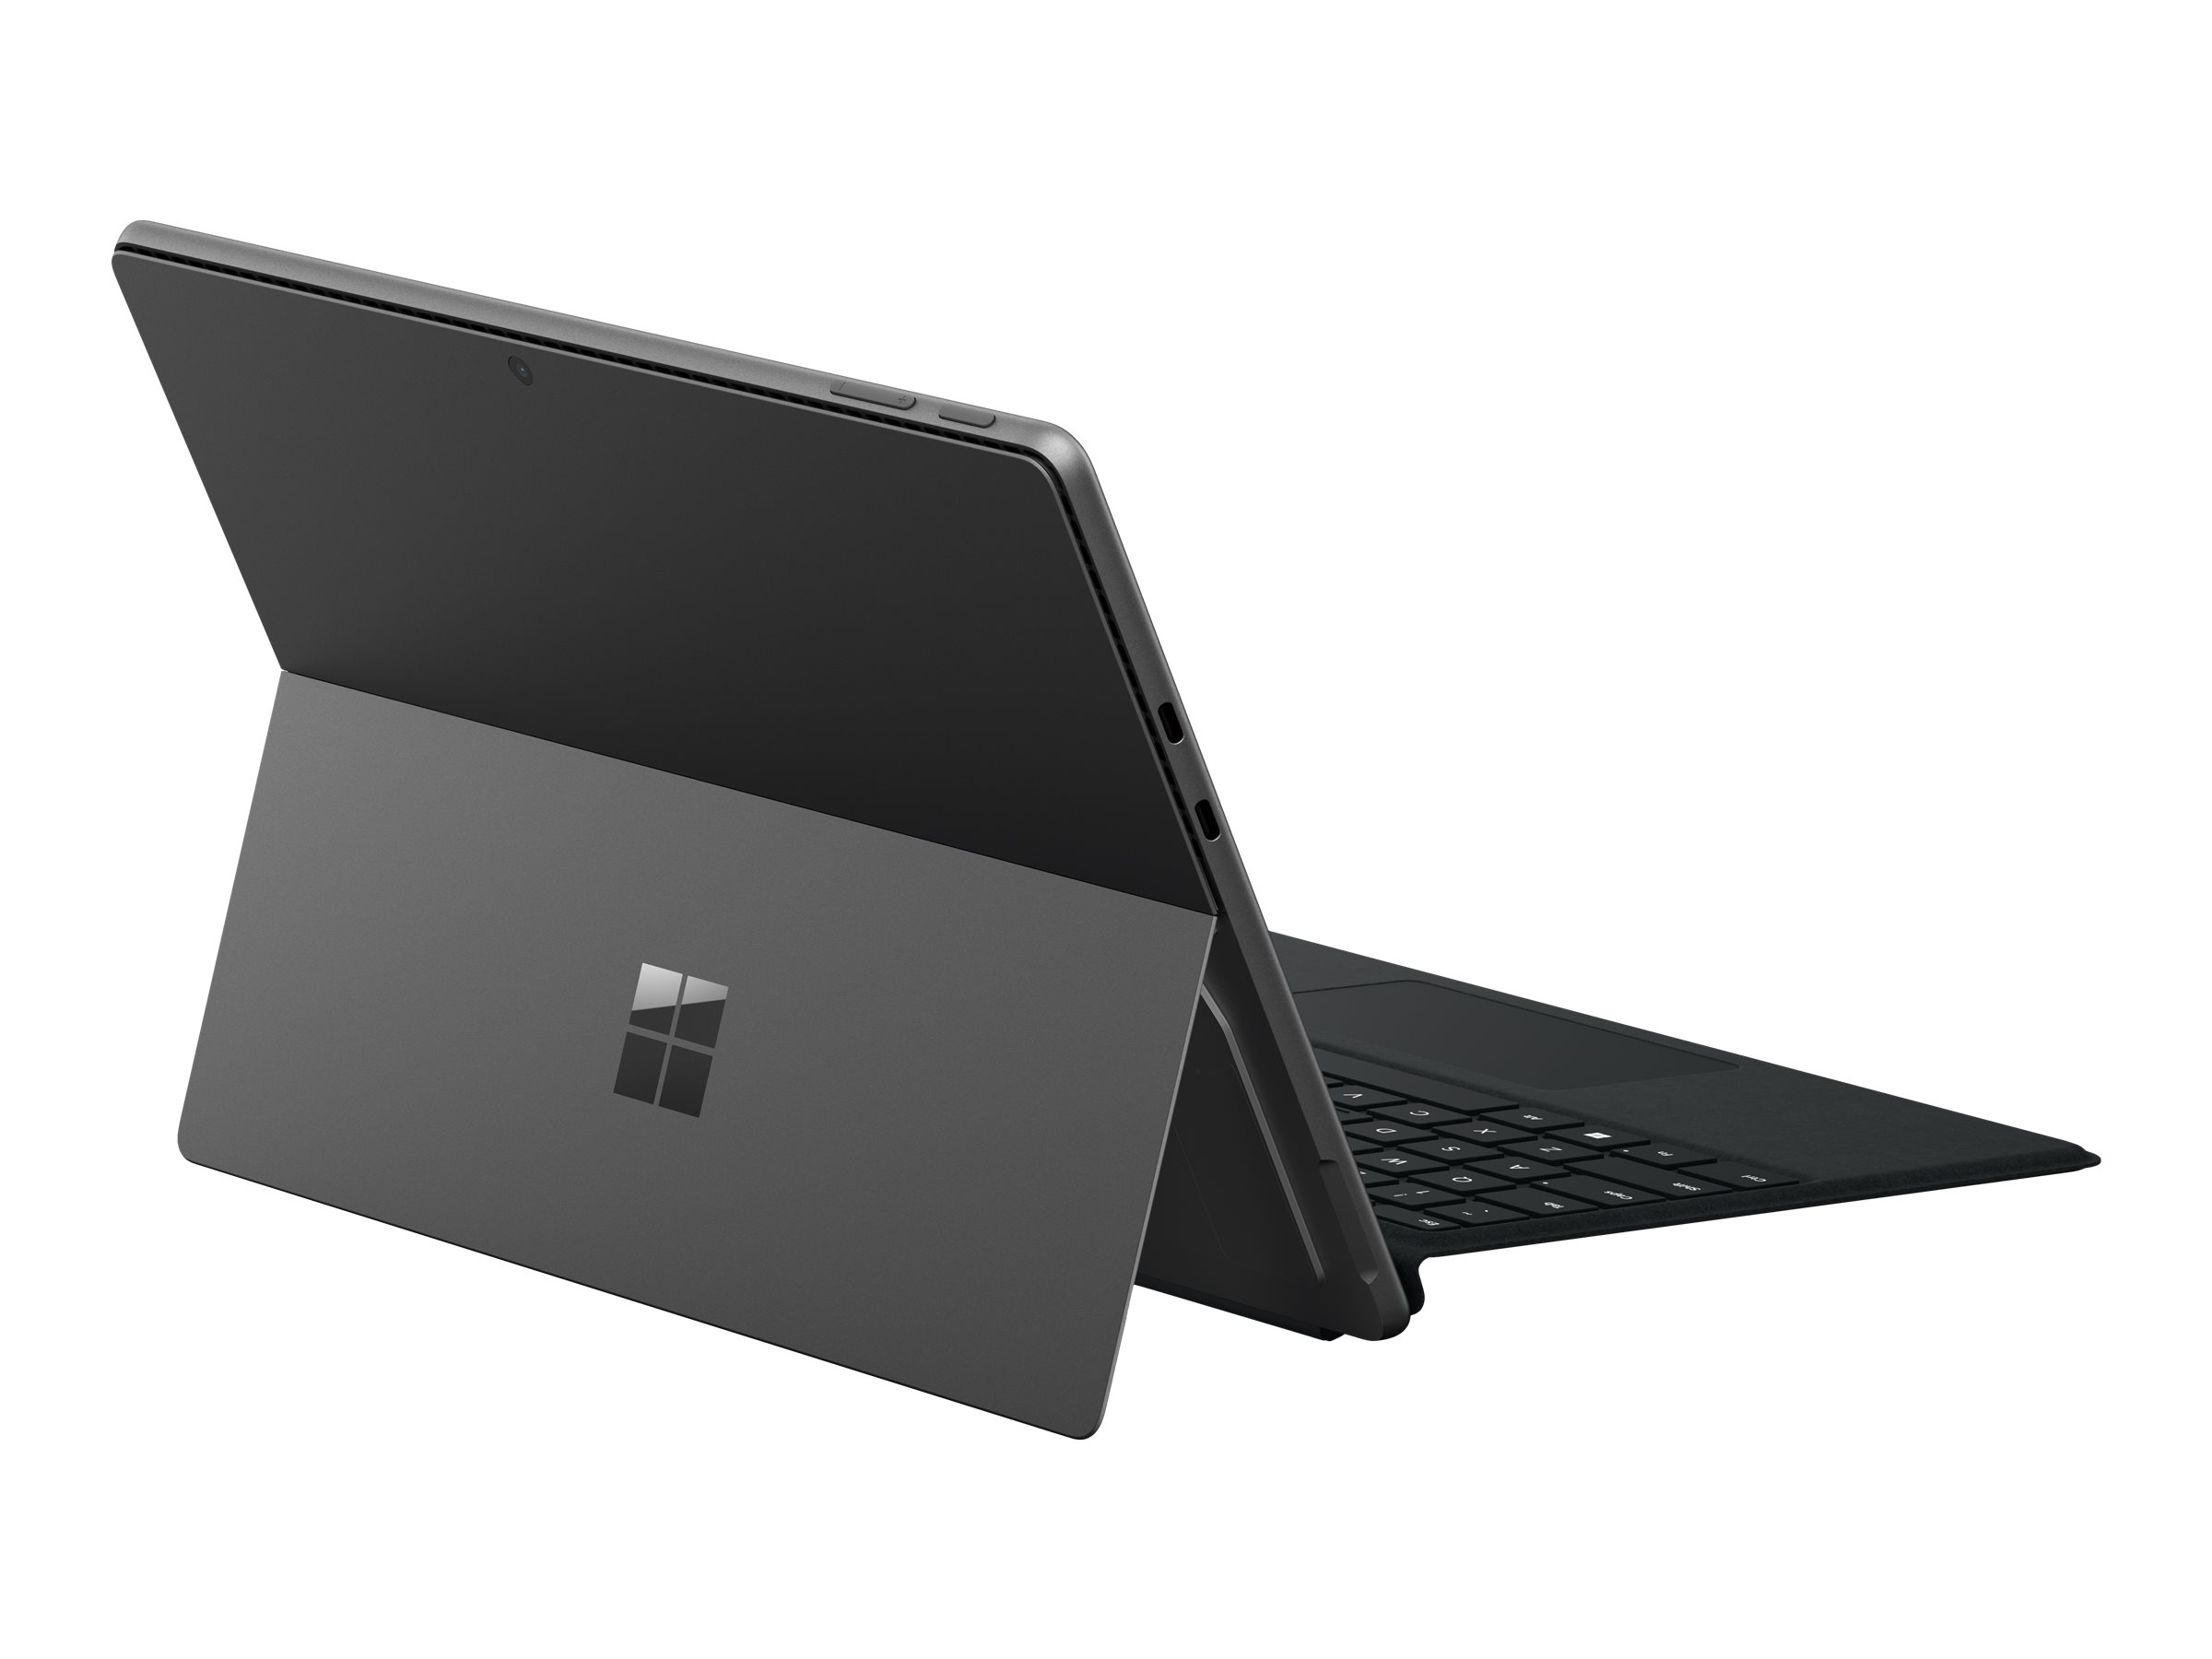 Microsoft Surface Pro 9 for Business - Tablette - Intel Core i5 - 1245U / jusqu'à 4.4 GHz - Evo - Win 11 Pro - Carte graphique Intel Iris Xe - 8 Go RAM - 256 Go SSD - 13" écran tactile 2880 x 1920 @ 120 Hz - Wi-Fi 6E - graphite - QF1-00022 - Ordinateurs portables